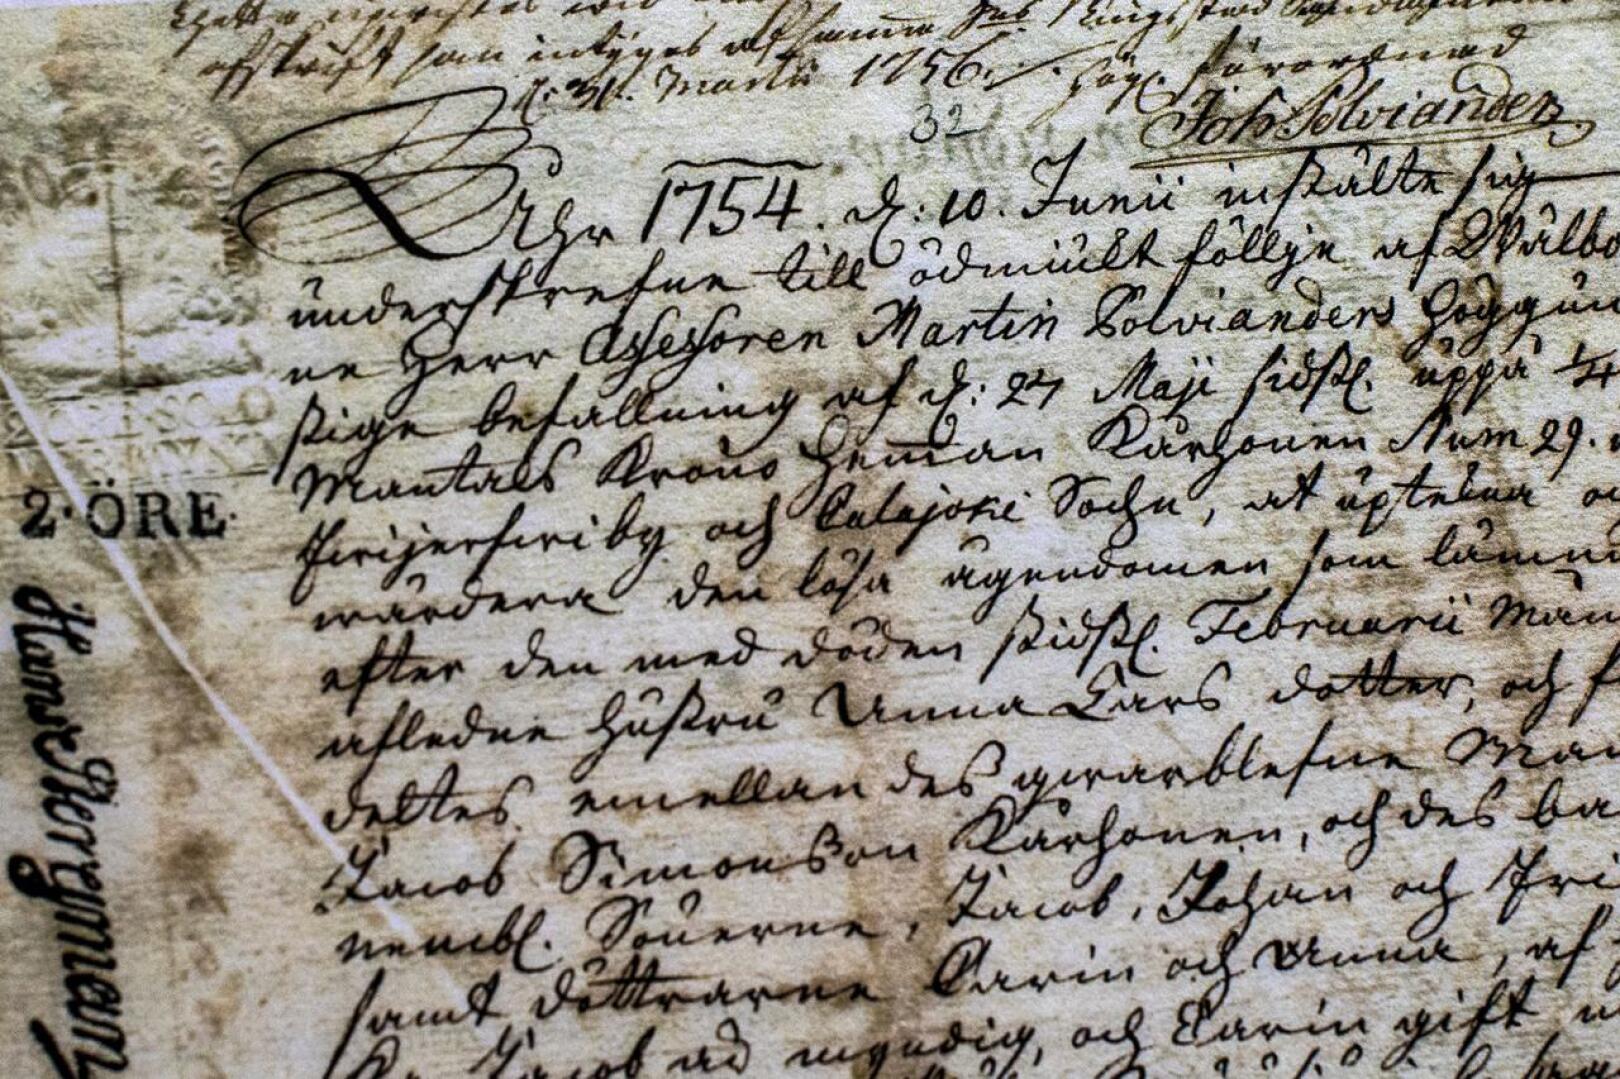 Anna Laurintyttären perunkirja on vuodelta 1754. Wörlineillä on arkistoituna paljon vanhoja asiakirjoja.